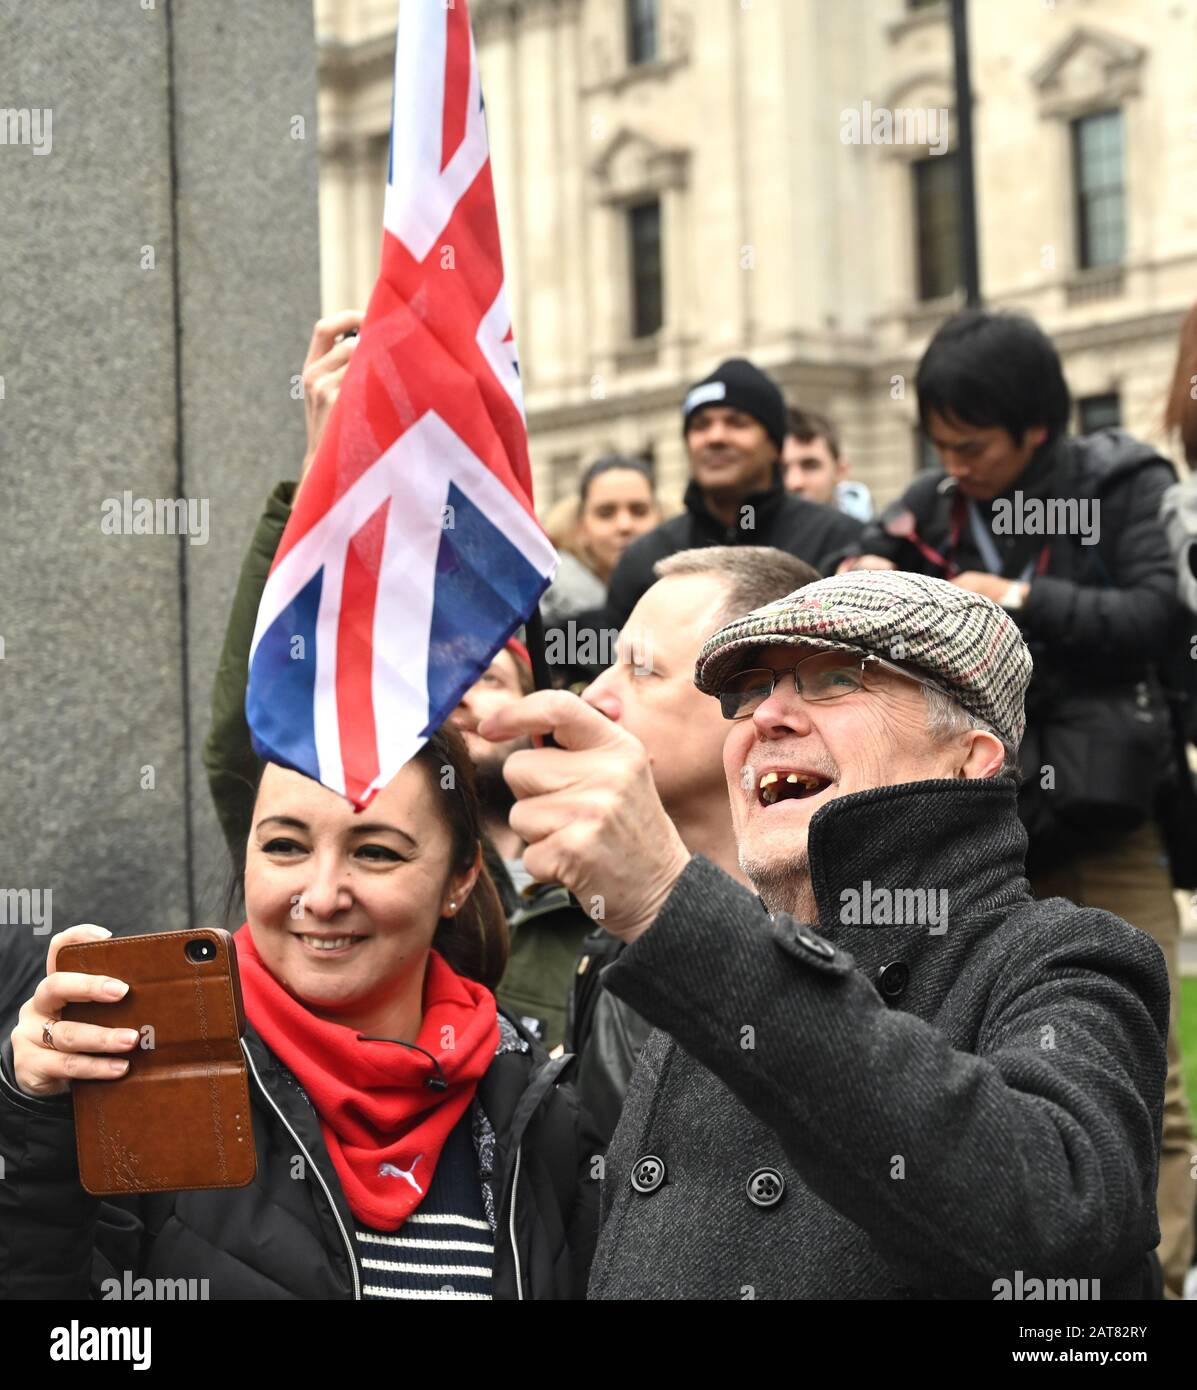 Londra UK 31st gennaio 2020 - i sostenitori della Brexit iniziano a celebrare in Parliament Square Londra mentre la Gran Bretagna si prepara a lasciare l'UE a 11pm più tardi questa sera 47 anni dopo l'adesione: Credit Simon Dack / Alamy Live News Foto Stock